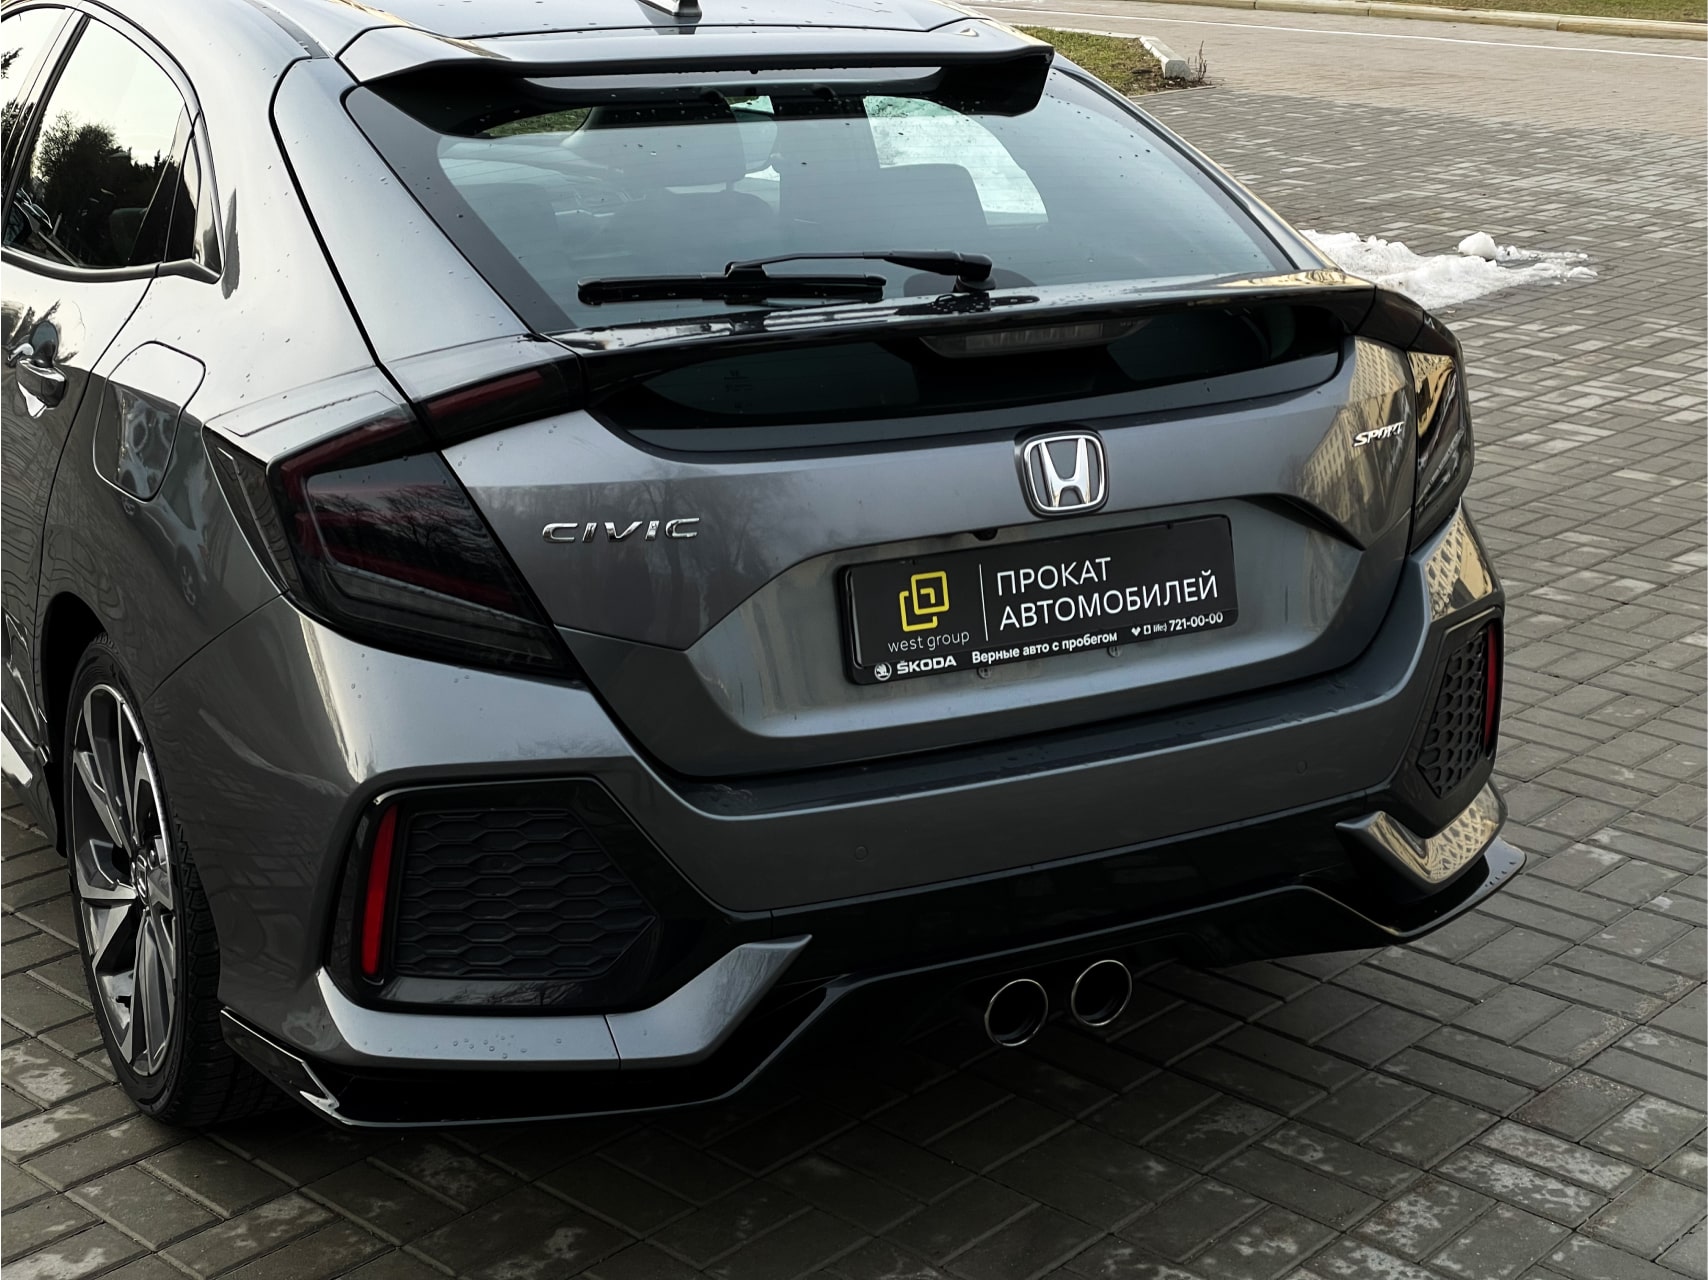 Аренда  Honda Civic X LL-CVT Sport  2 класса 2018-2020 года в городе Минск от 39 $/сутки,  двигатель: Бензин , объем 1.5 литров, КАСКО (Мультидрайв), без водителя, вид 3 - West Group